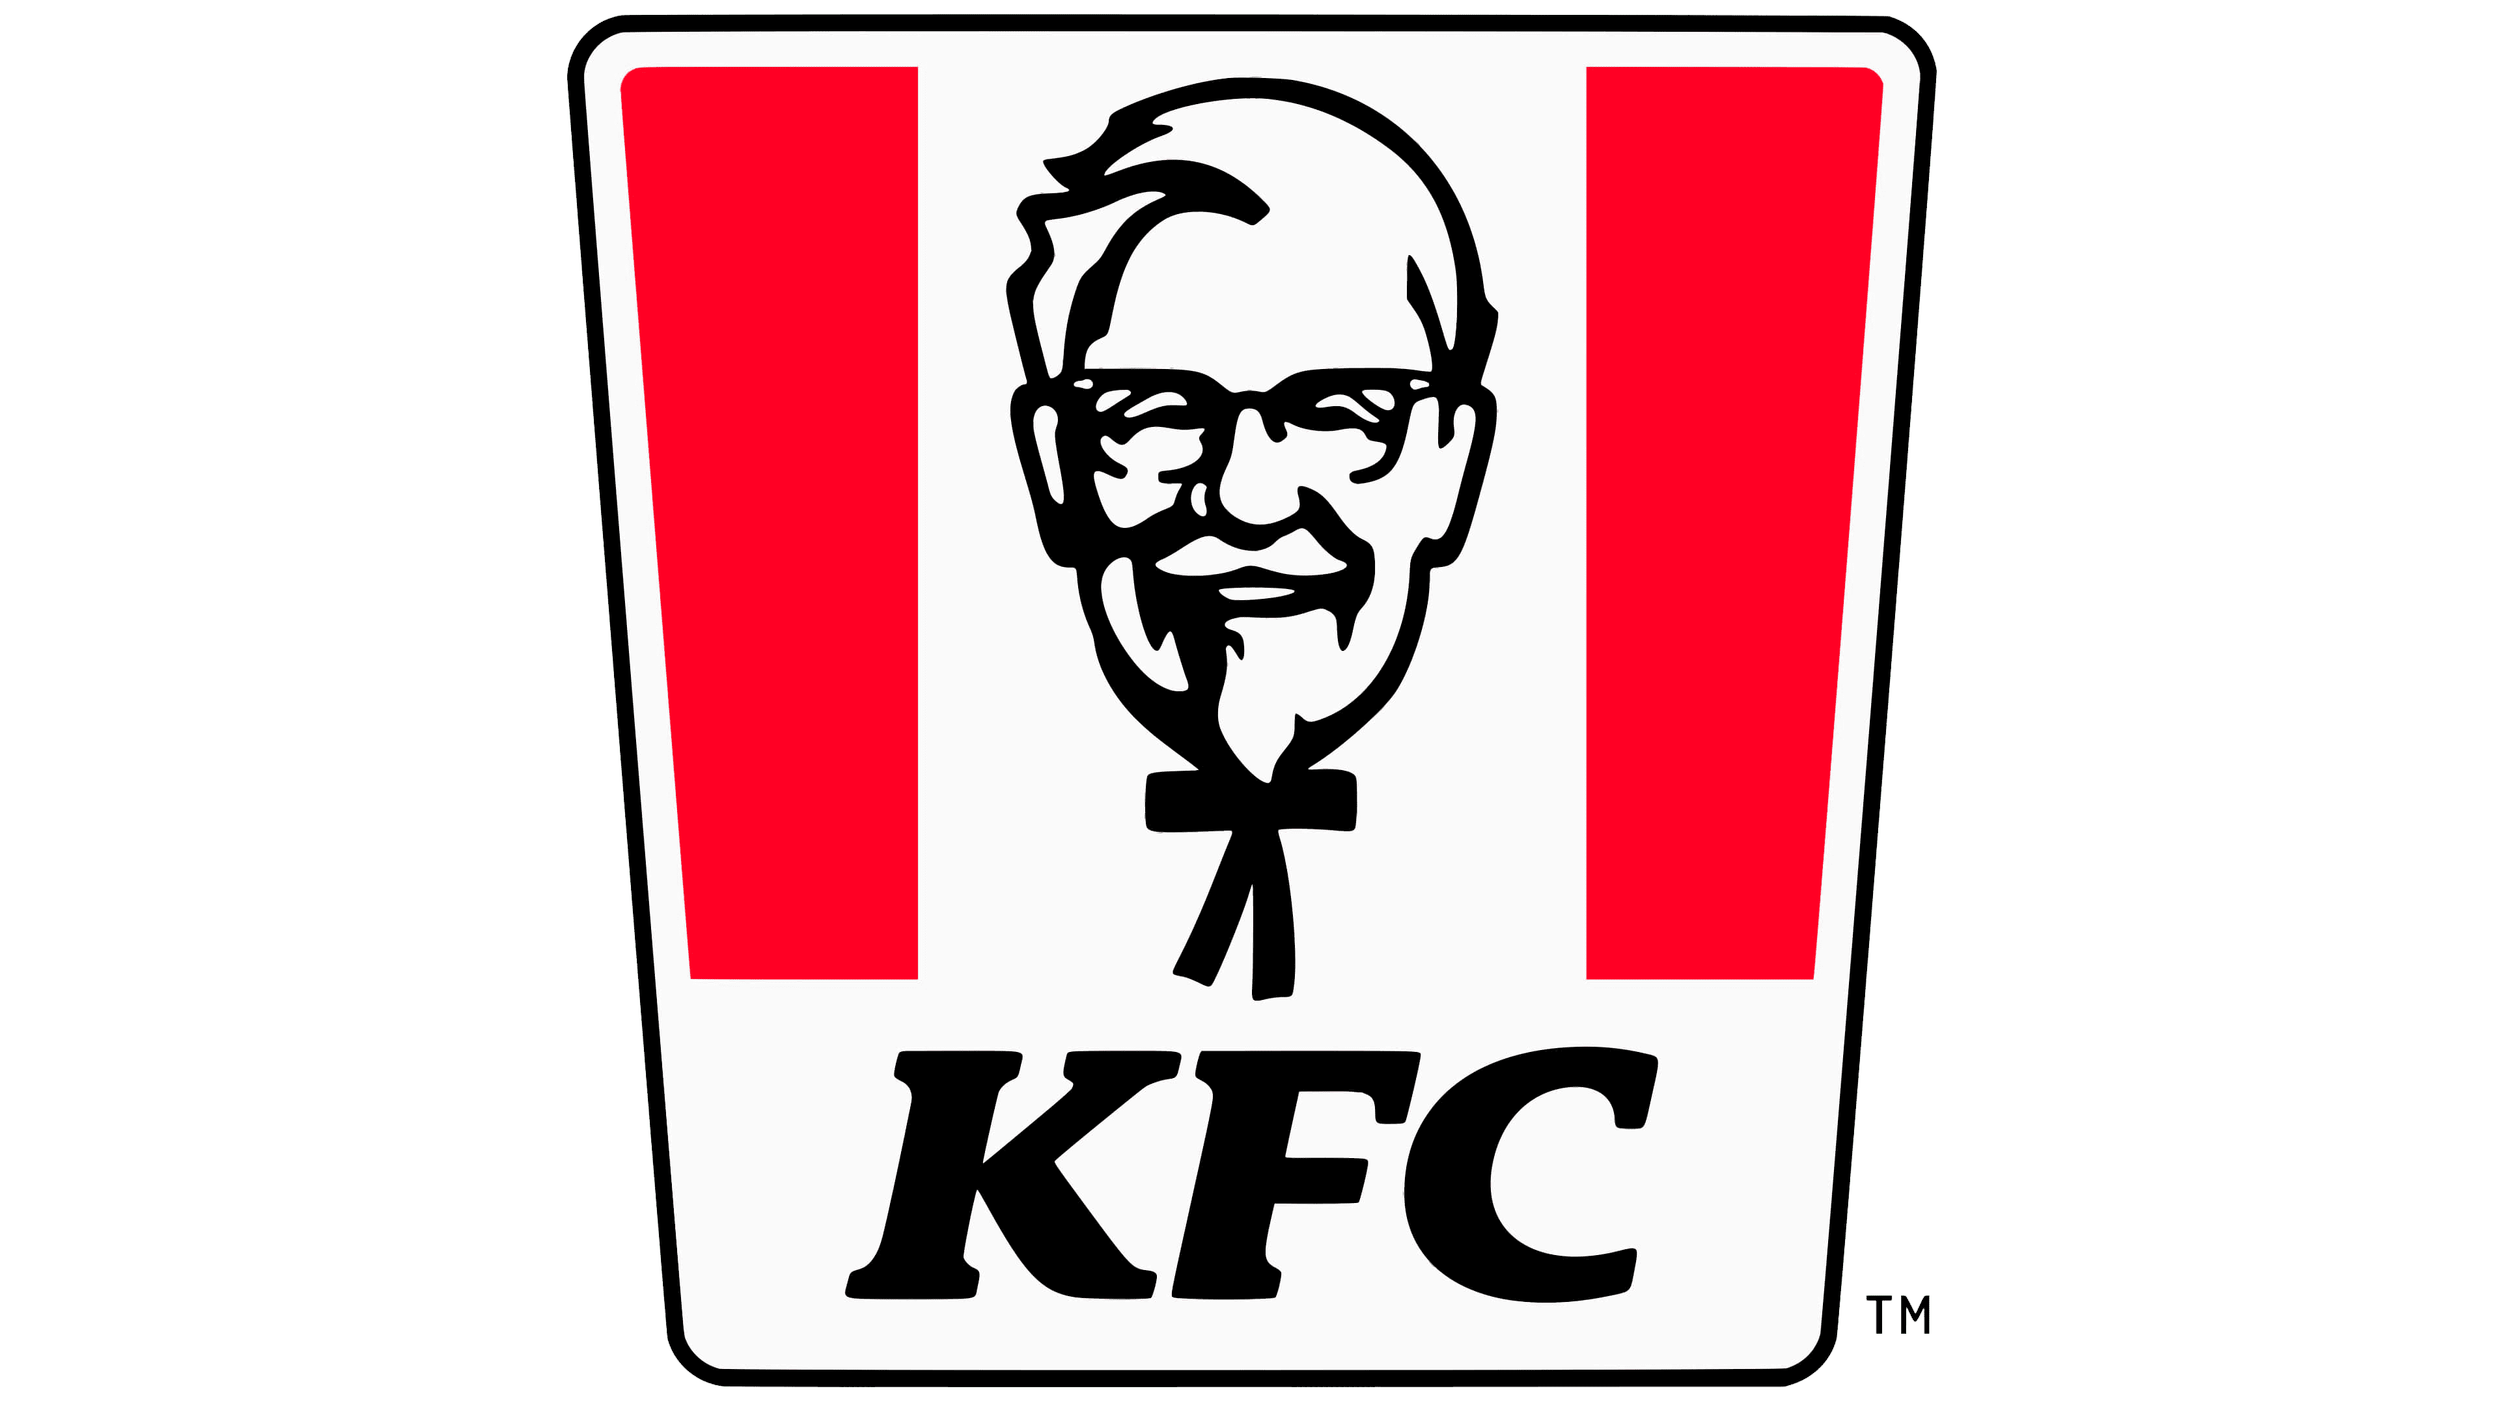 Kfc_logo.png